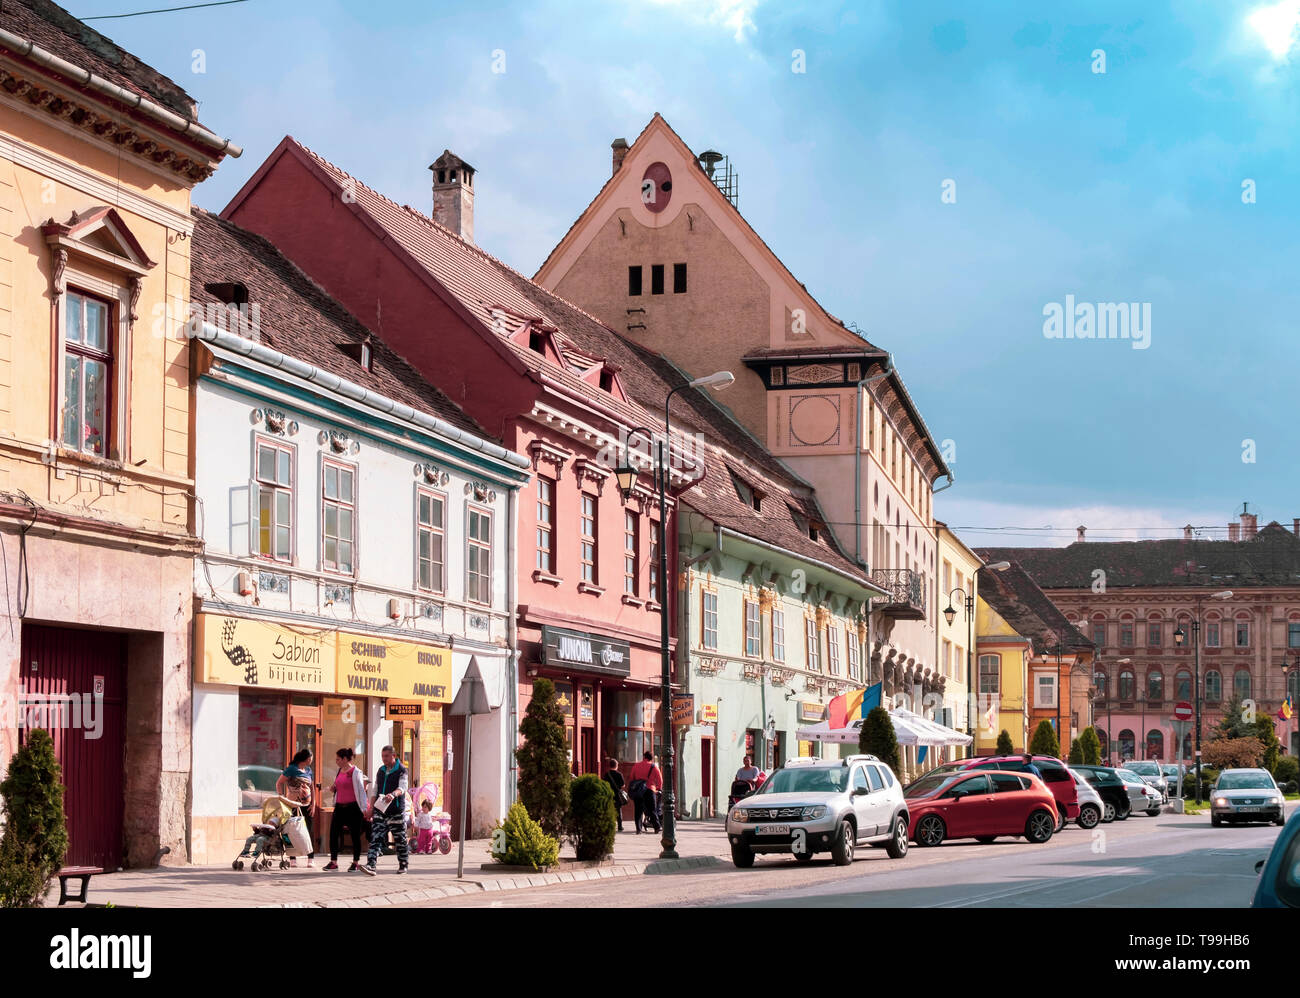 Alba Iulia, Rumänien - 9. April 2019: Street View von Sighisoara an einem  sonnigen Tag mit Menschen bummeln und viele Autos geparkt Stockfotografie -  Alamy